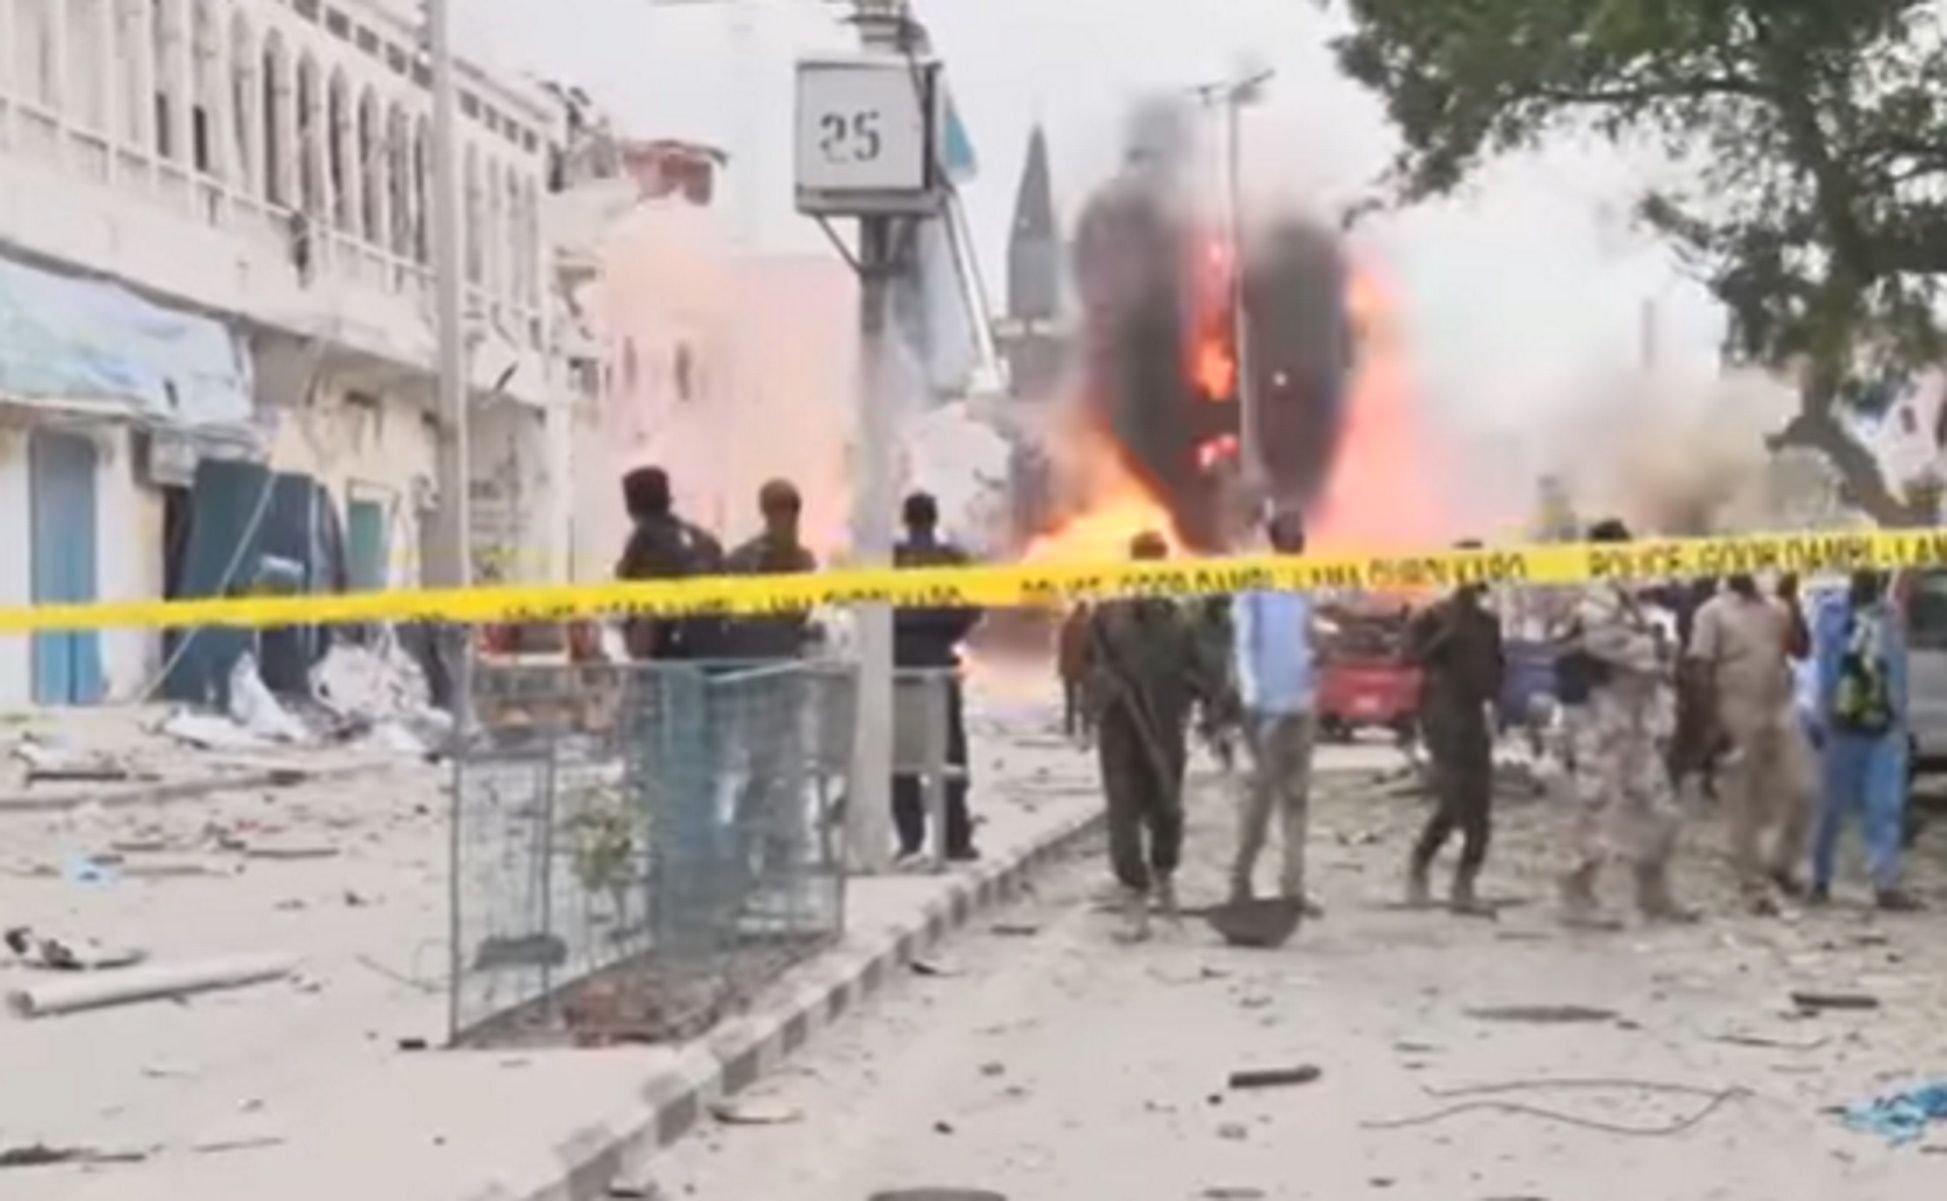 Σομαλία: Ανατίναξαν αυτοκίνητο γεμάτο εκρηκτικά στην είσοδο ξενοδοχείου – Την ευθύνη ανέλαβε παρακλάδι της Αλ Κάιντα